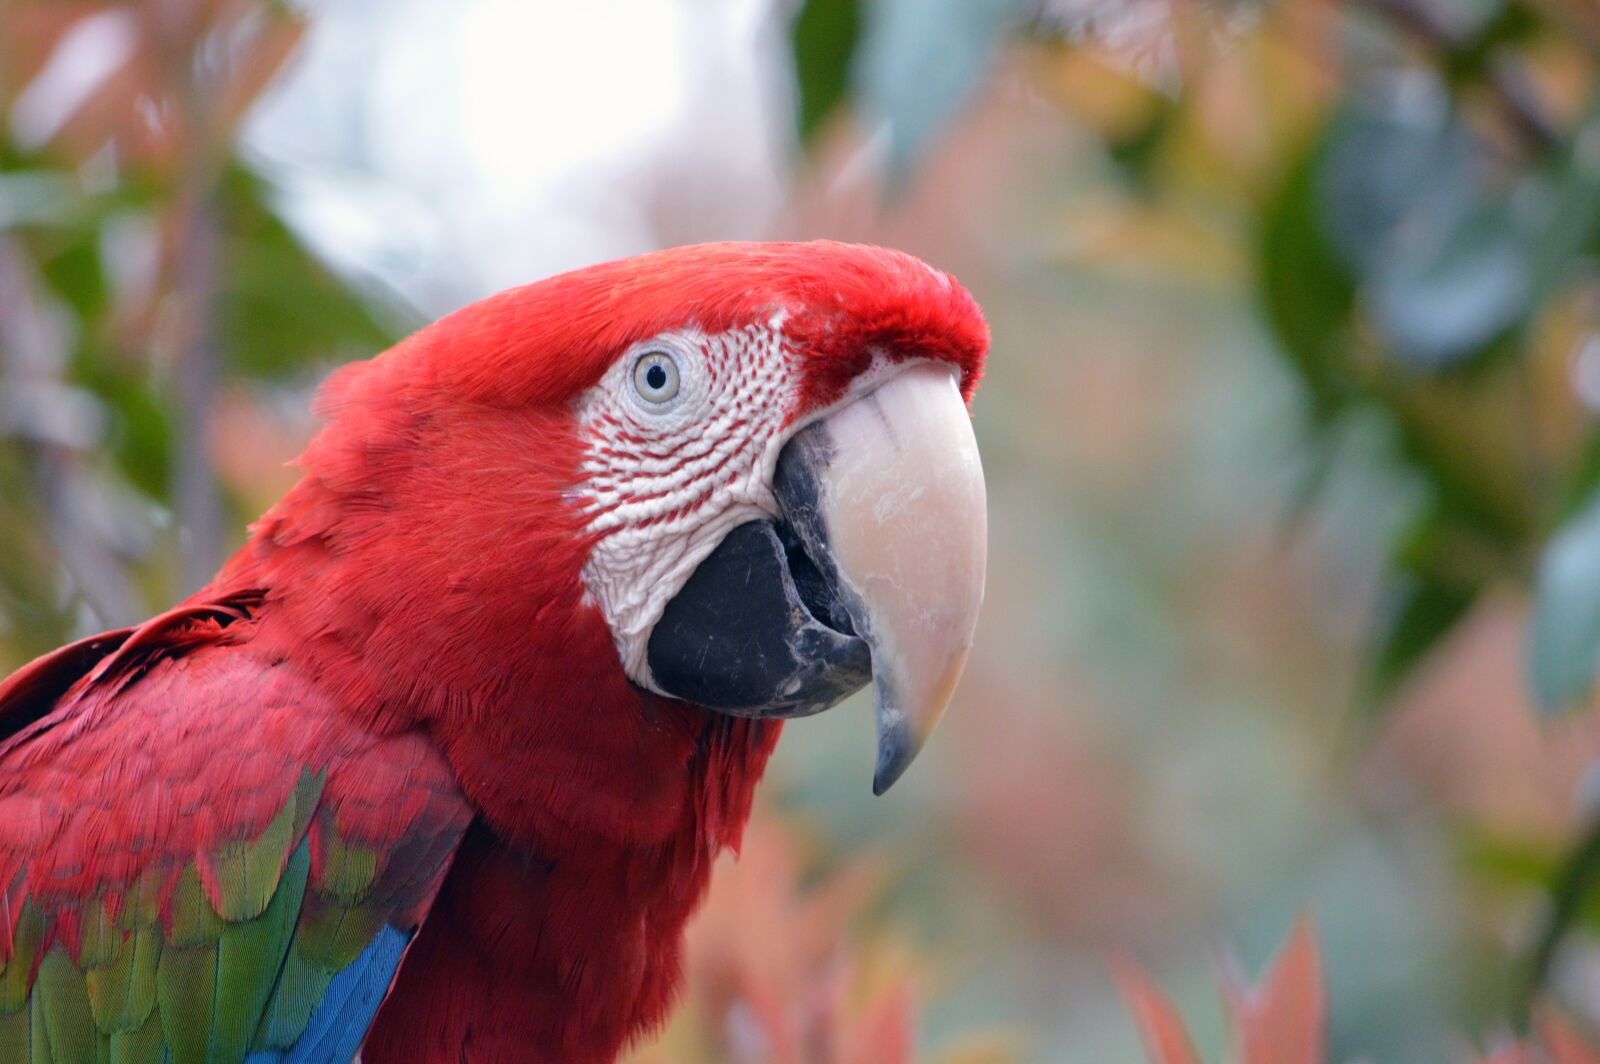 Nikon D3200 sample photo. Bird, macaw, animal photography